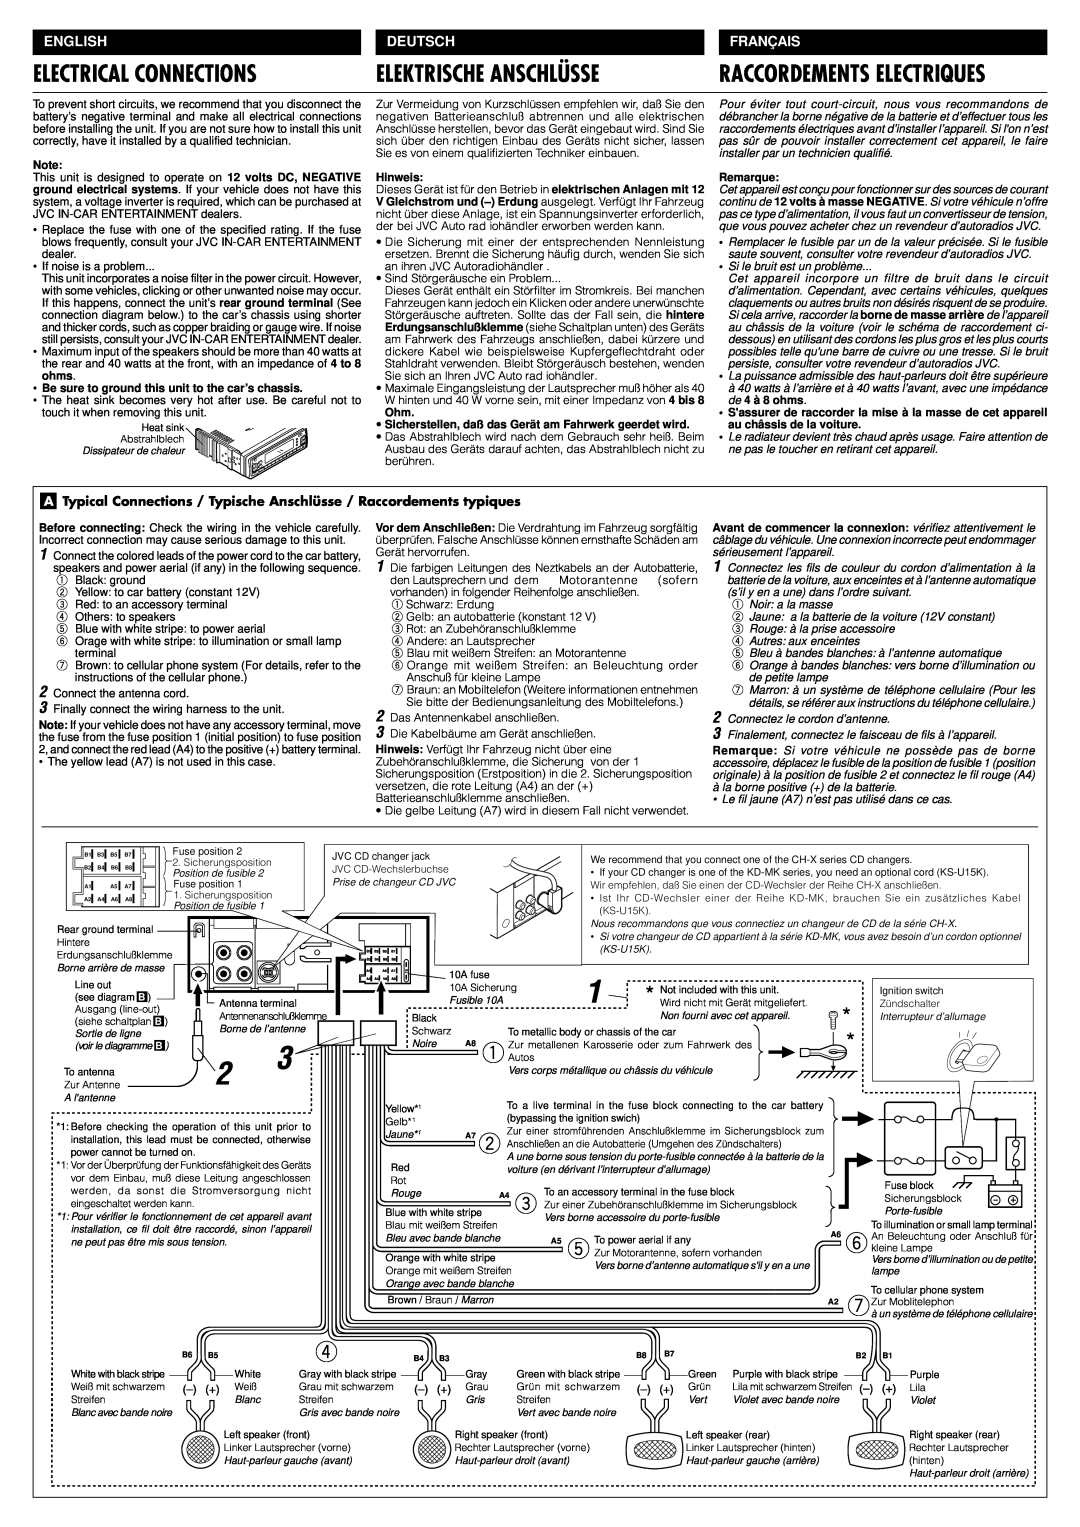 JVC KS-FX833 manual Electrical Connections, Elektrische Anschlüsse, Français, Raccordements Electriques, English, Deutsch 